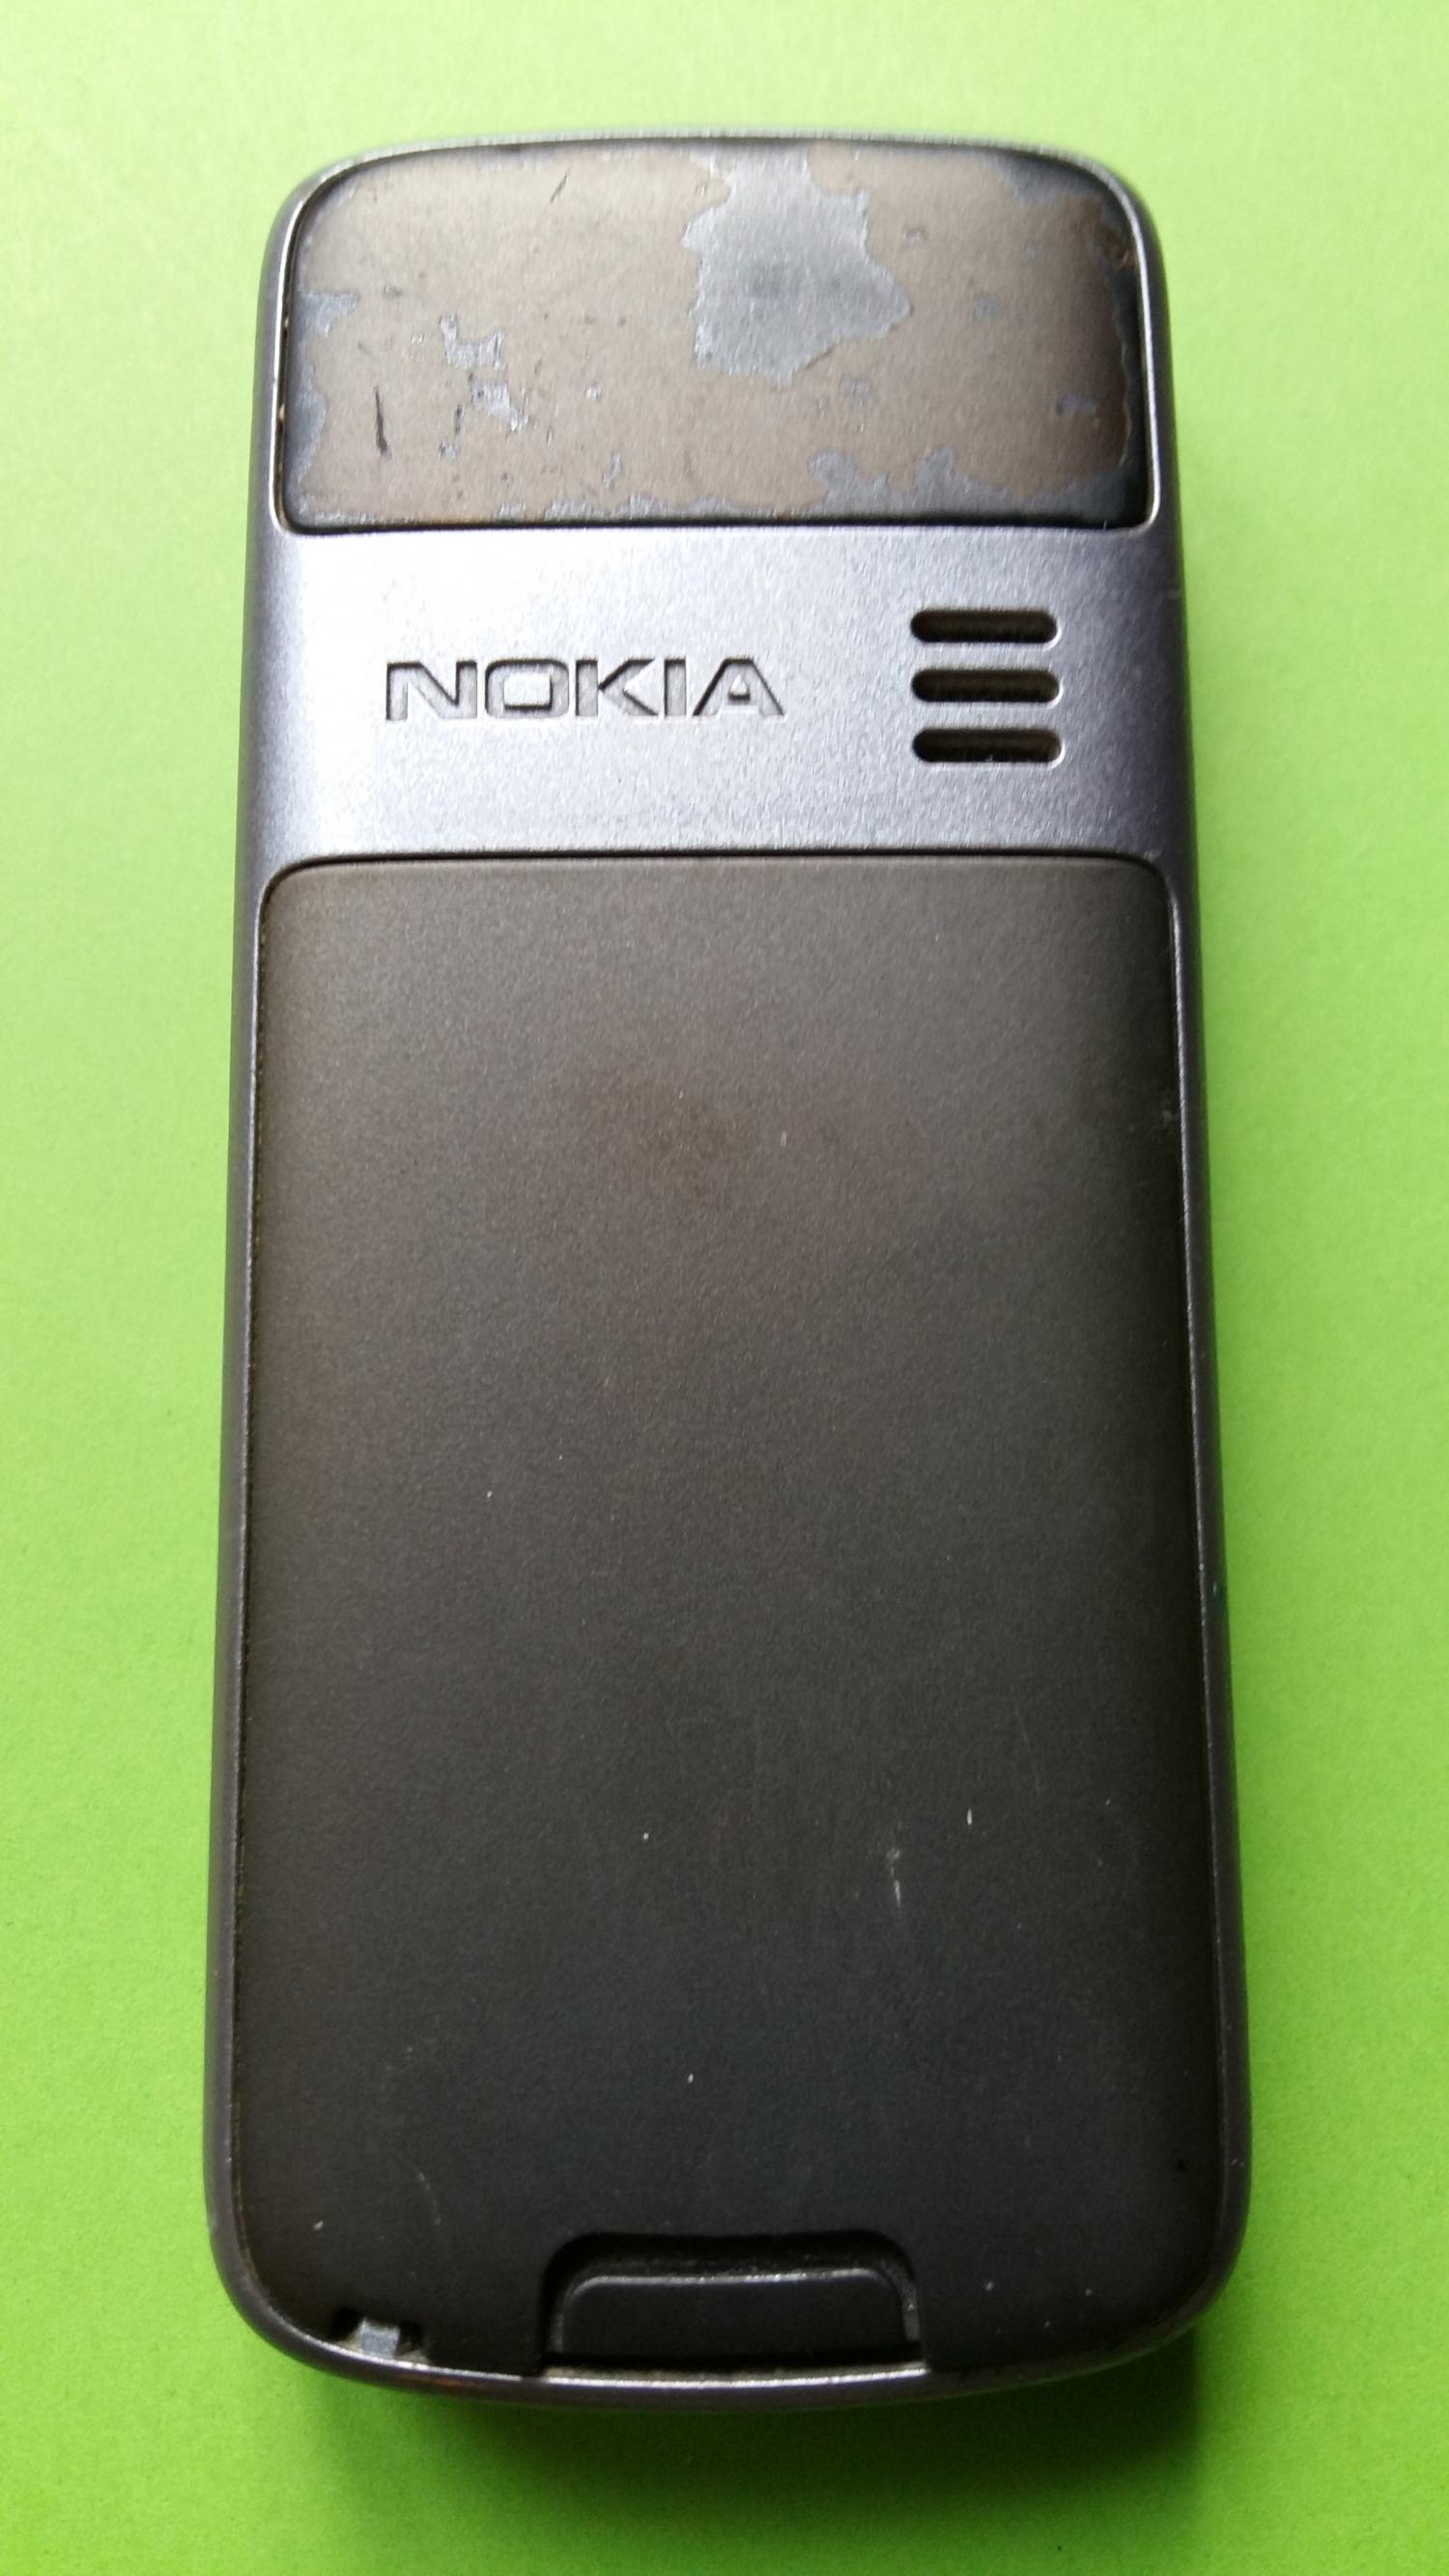 image-7304620-Nokia 3109C (2)2.jpg